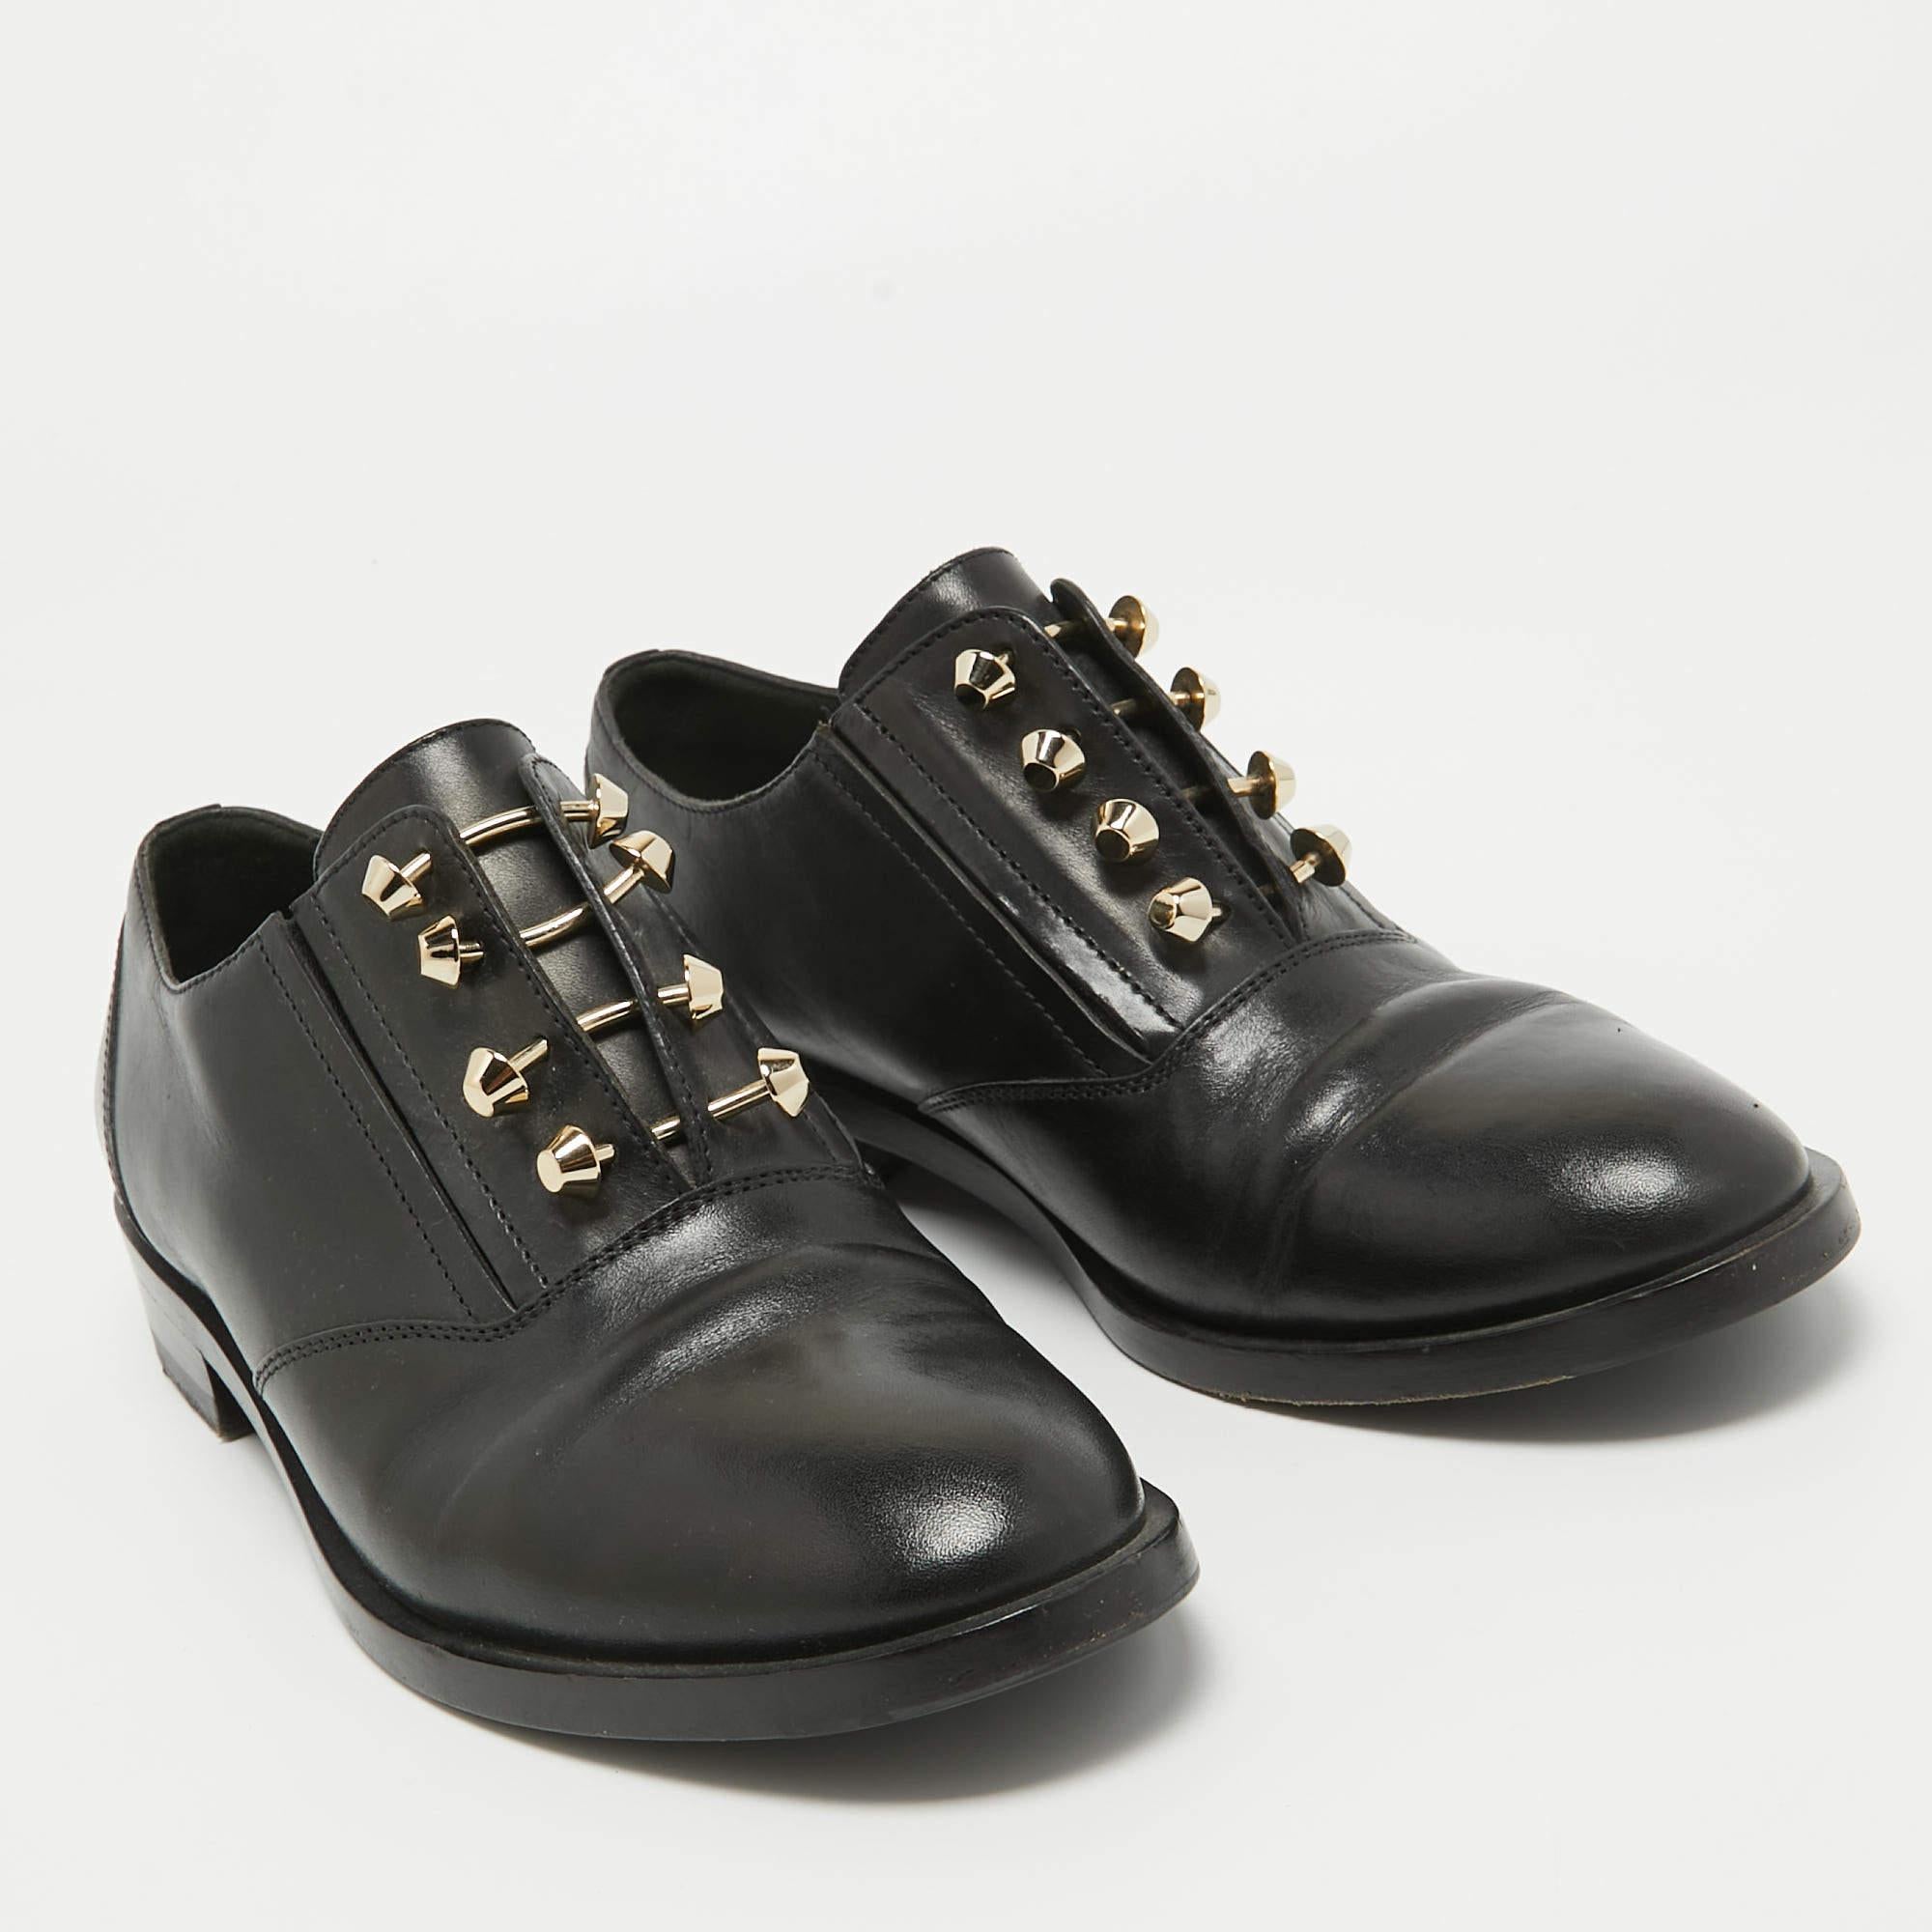 Balenciaga Black Leather Slip On Oxfords Size 39.5 In Good Condition For Sale In Dubai, Al Qouz 2